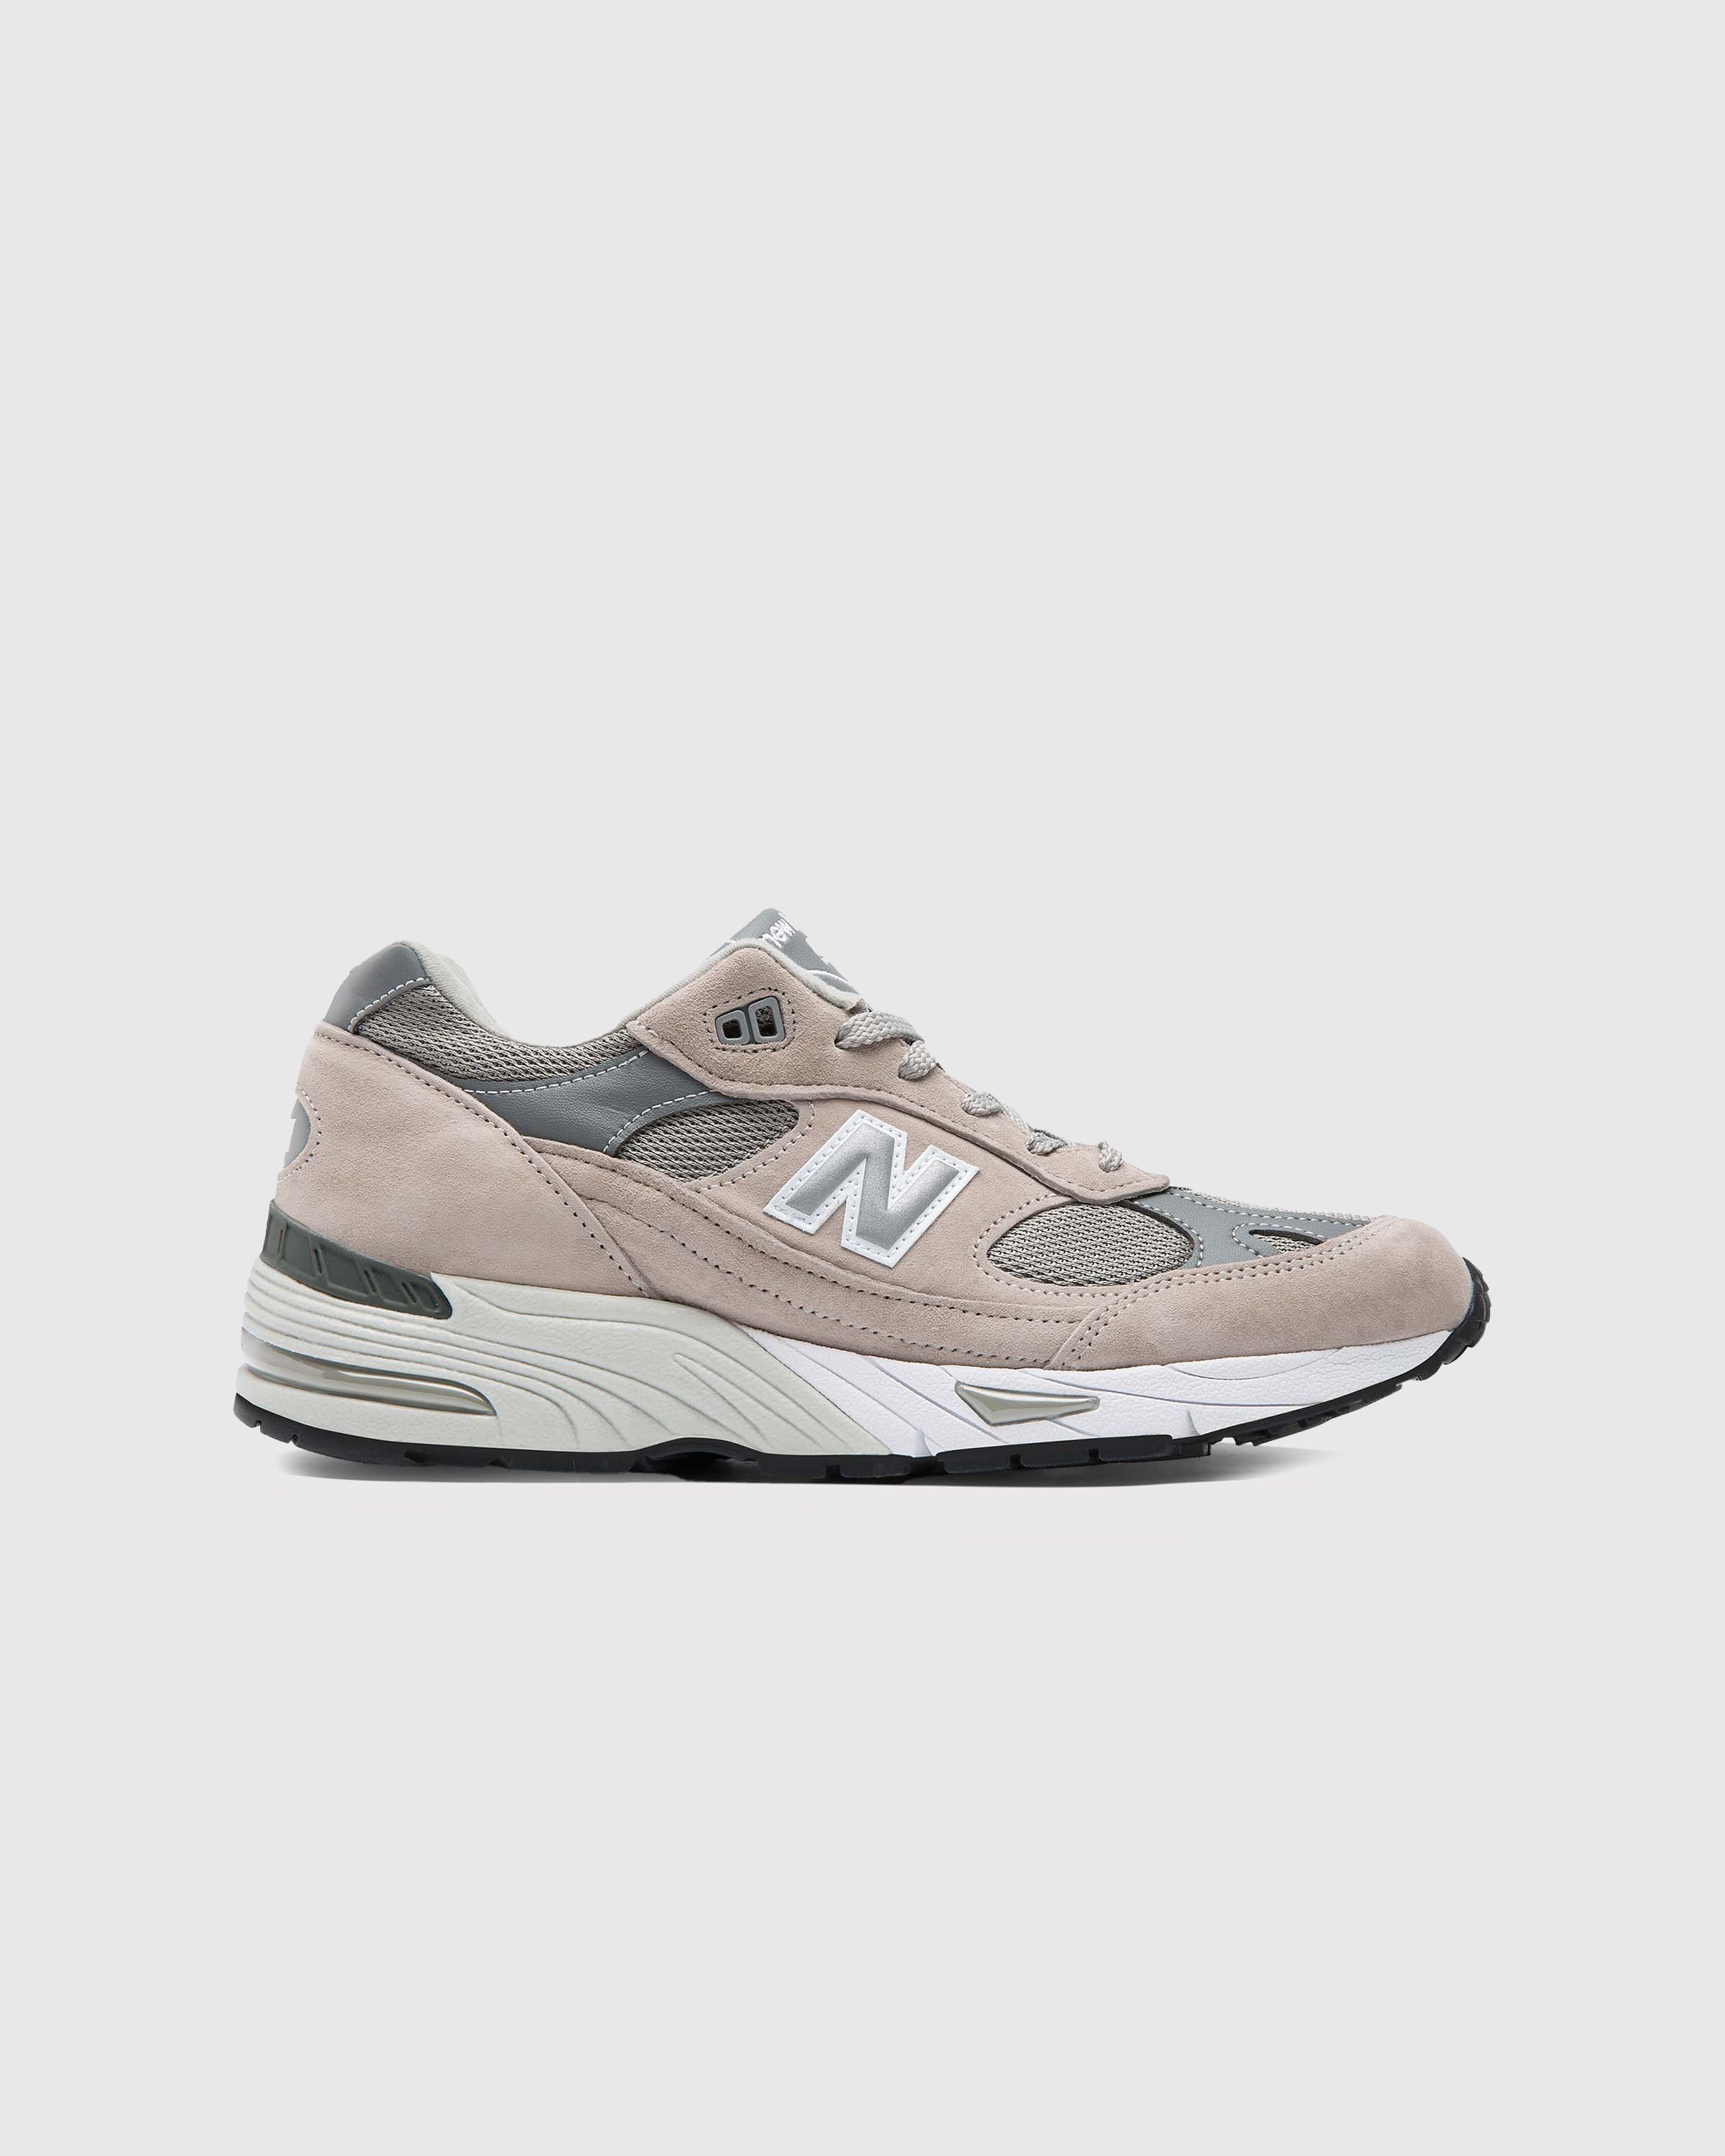 New Balance - M991GL Grey - Footwear - Grey - Image 1